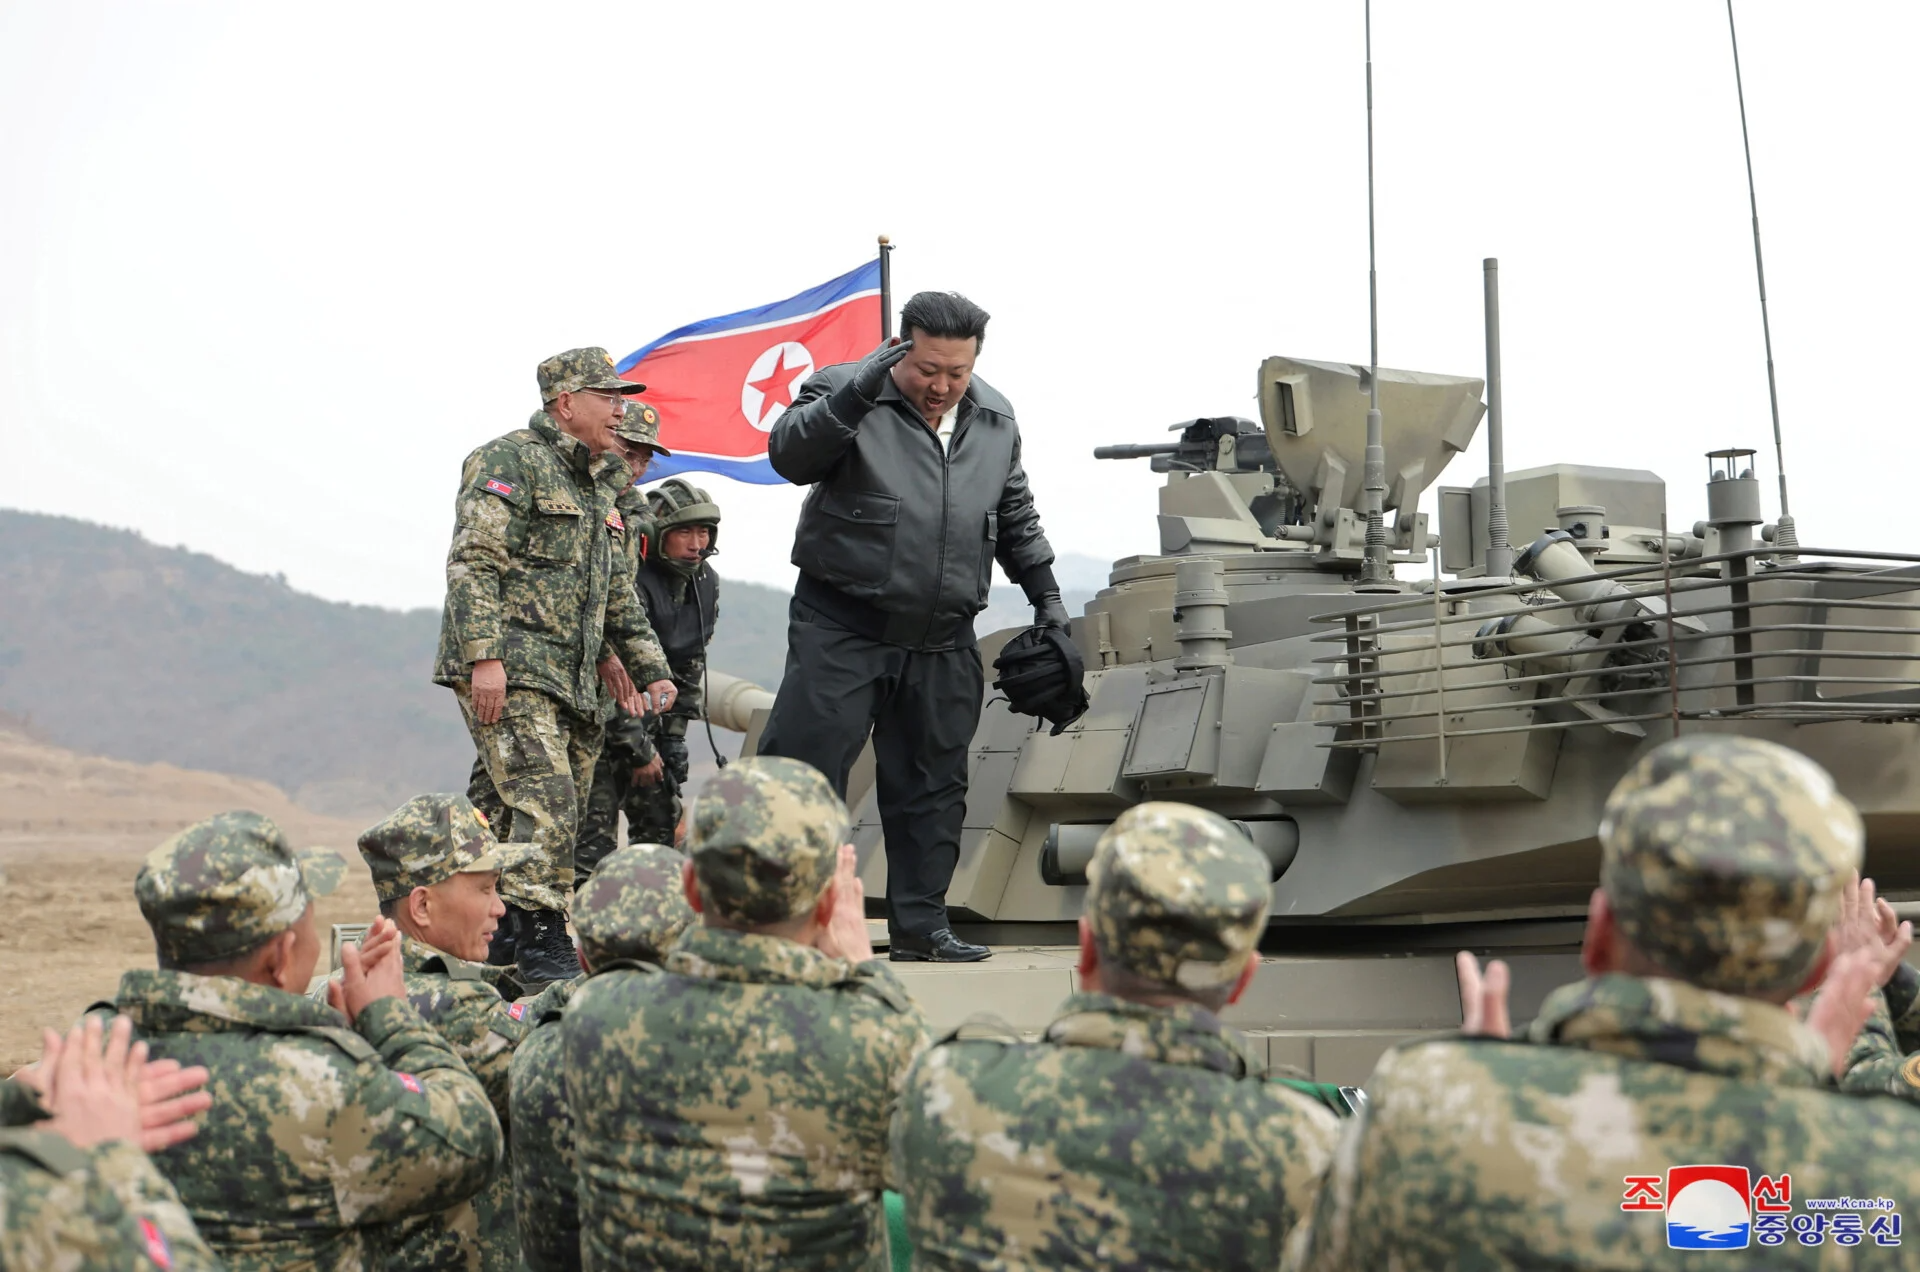 Βόρεια Κορέα: Ο Κιμ Γιονγκ Ουν οδηγεί τανκ σε προσομοίωση μάχης – Εικόνες